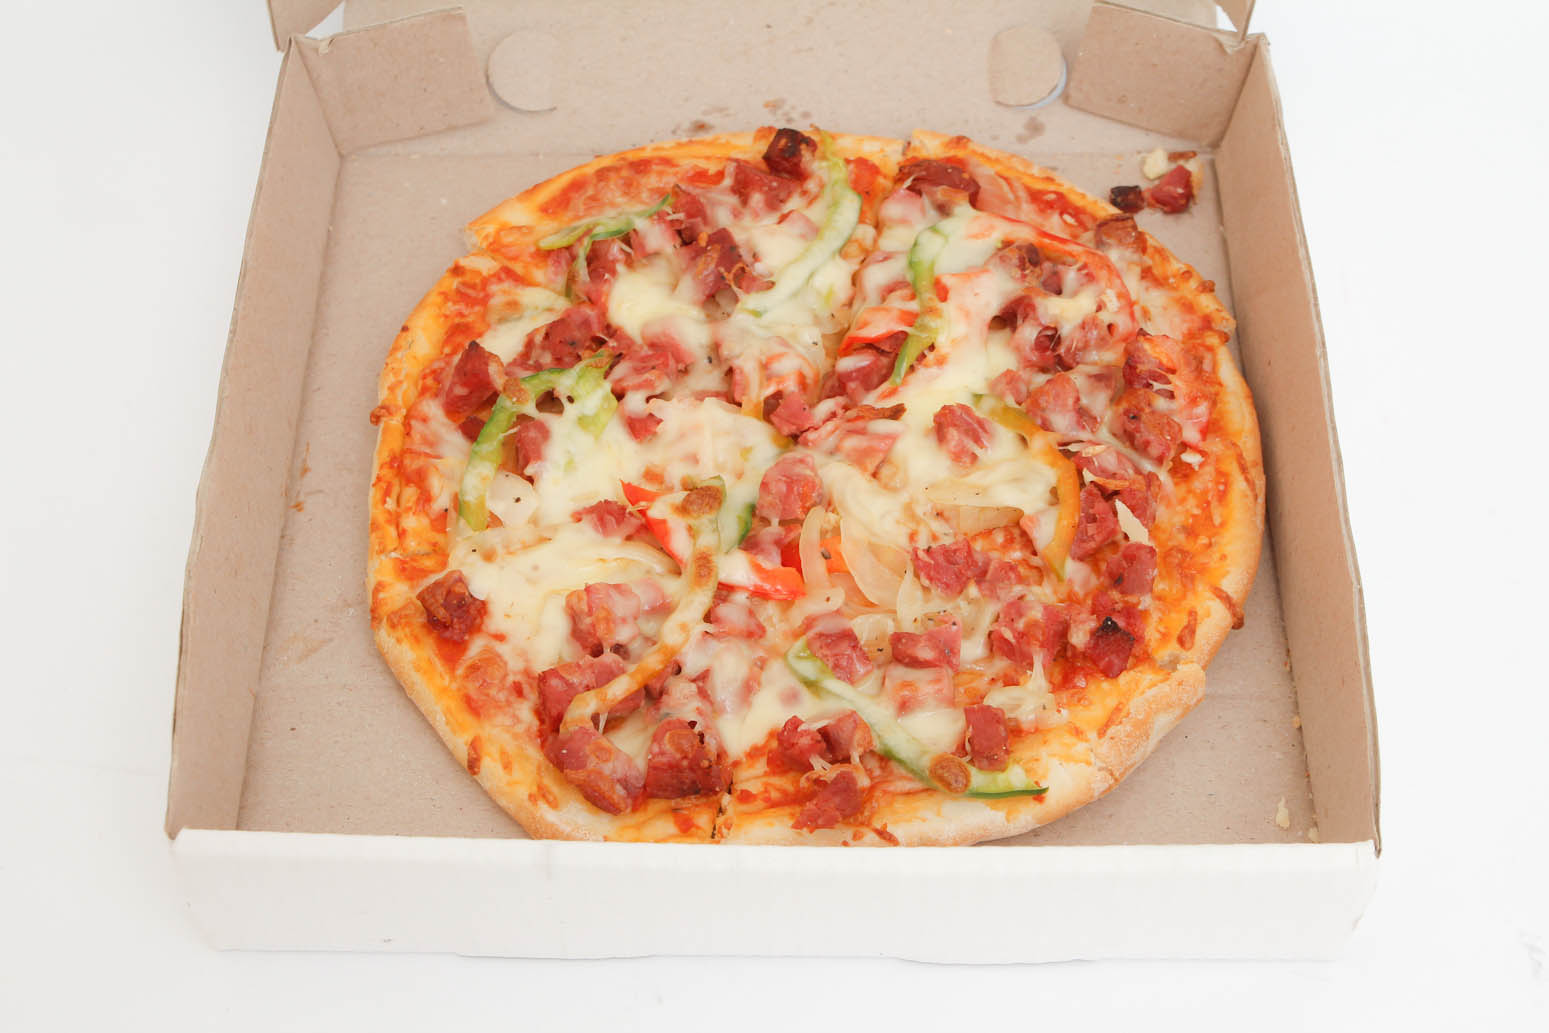 Vỏ hộp đựng pizza chứa các chất độc hại